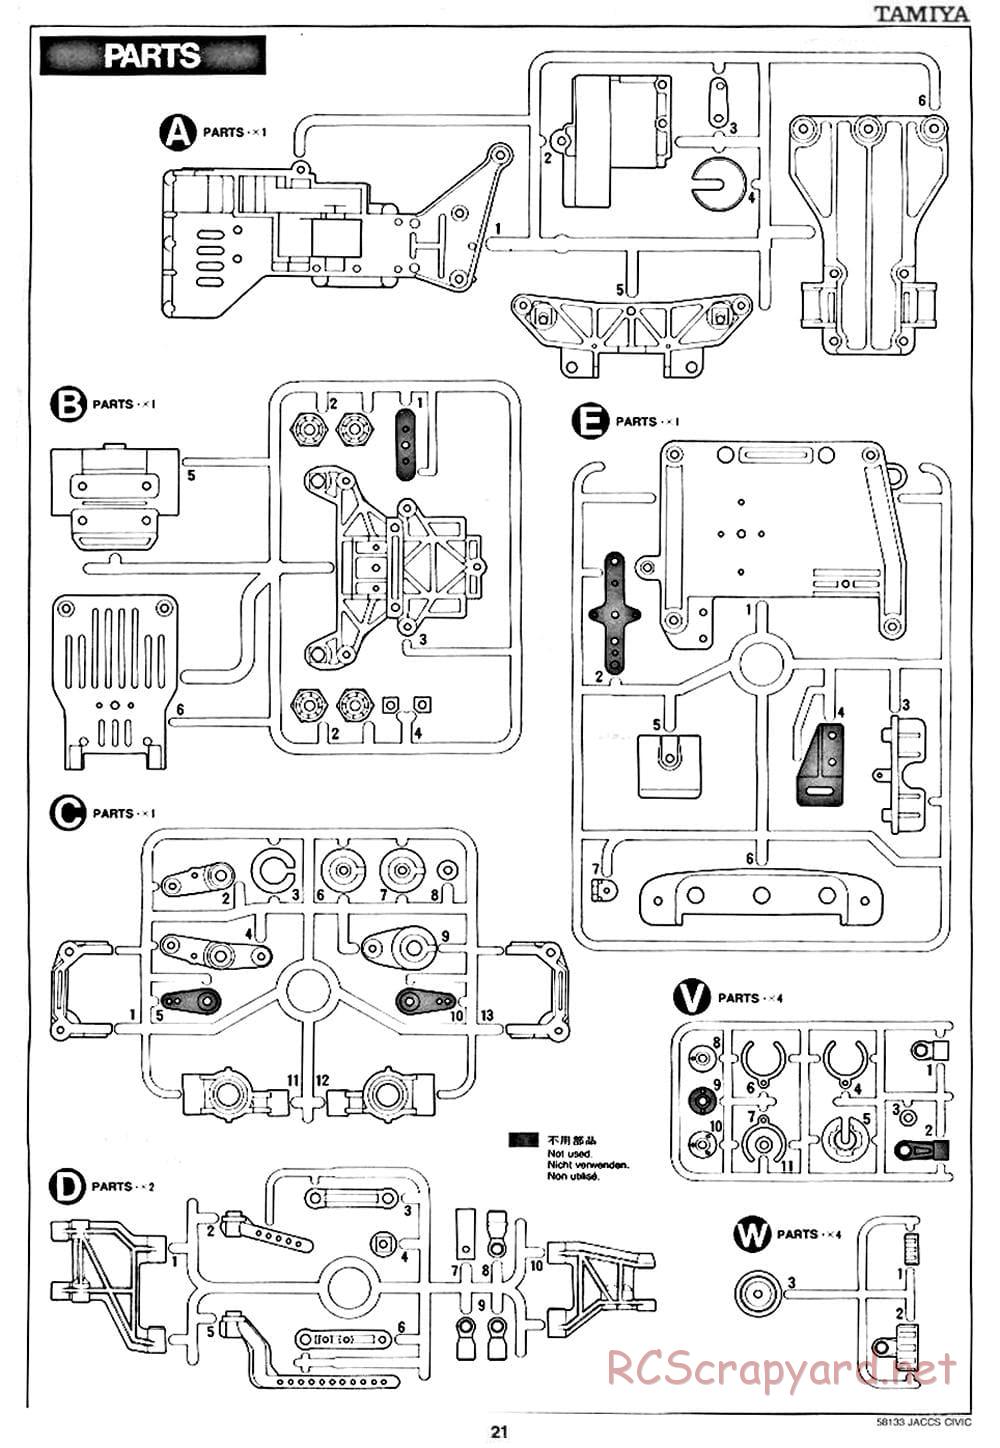 Tamiya - JACCS Honda Civic - FF-01 Chassis - Manual - Page 21